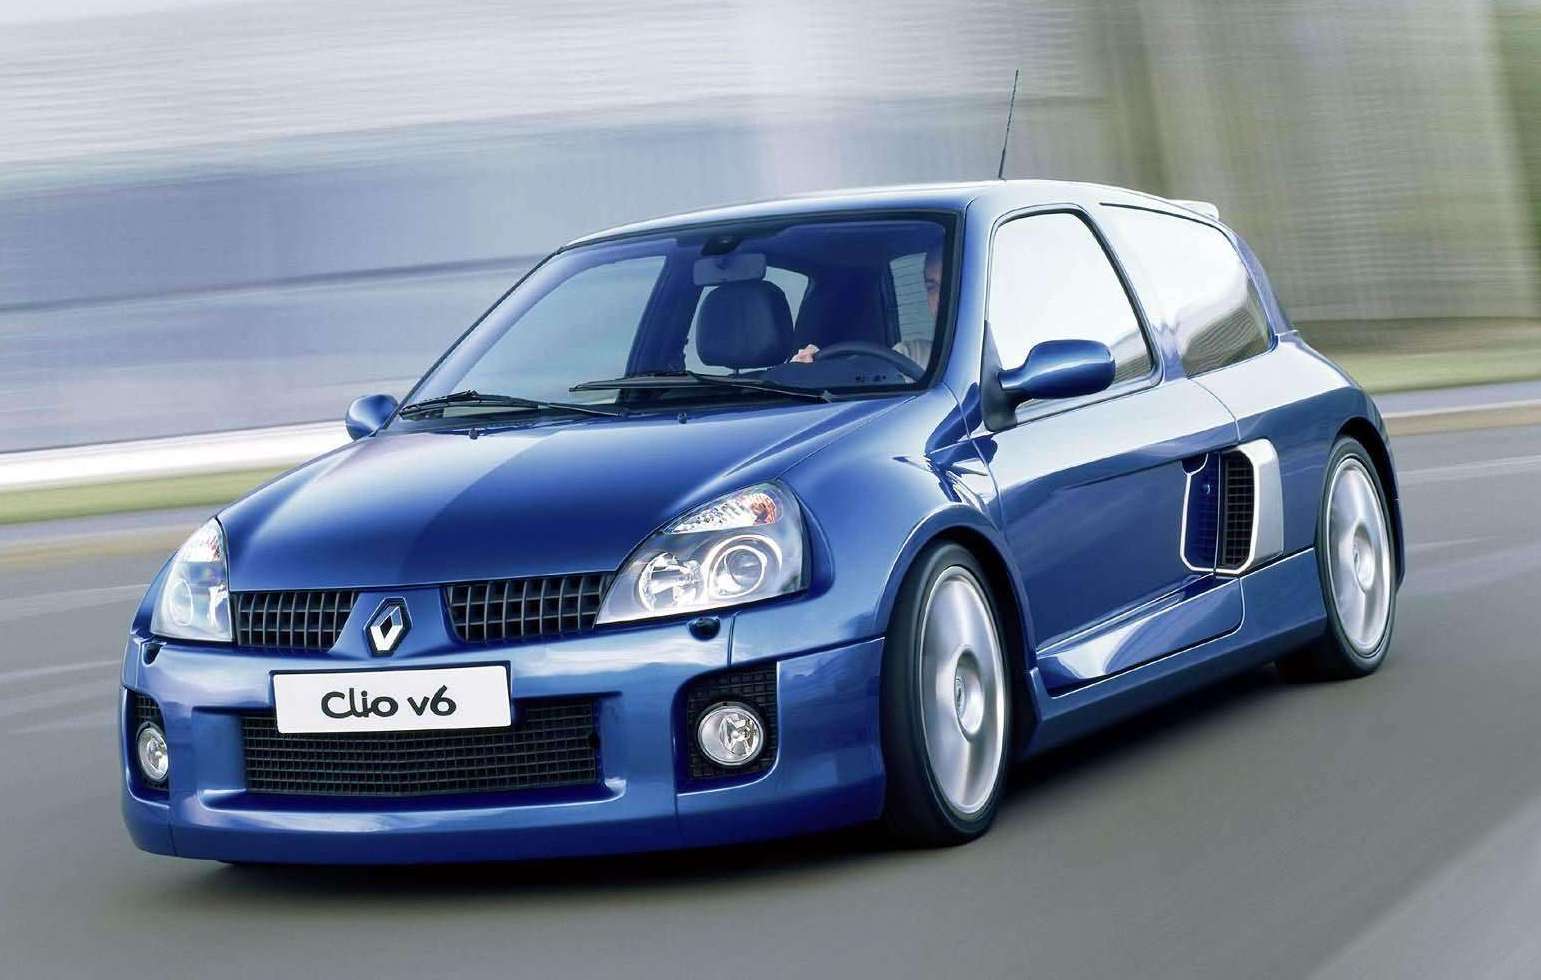 Clio Renault Sport V6